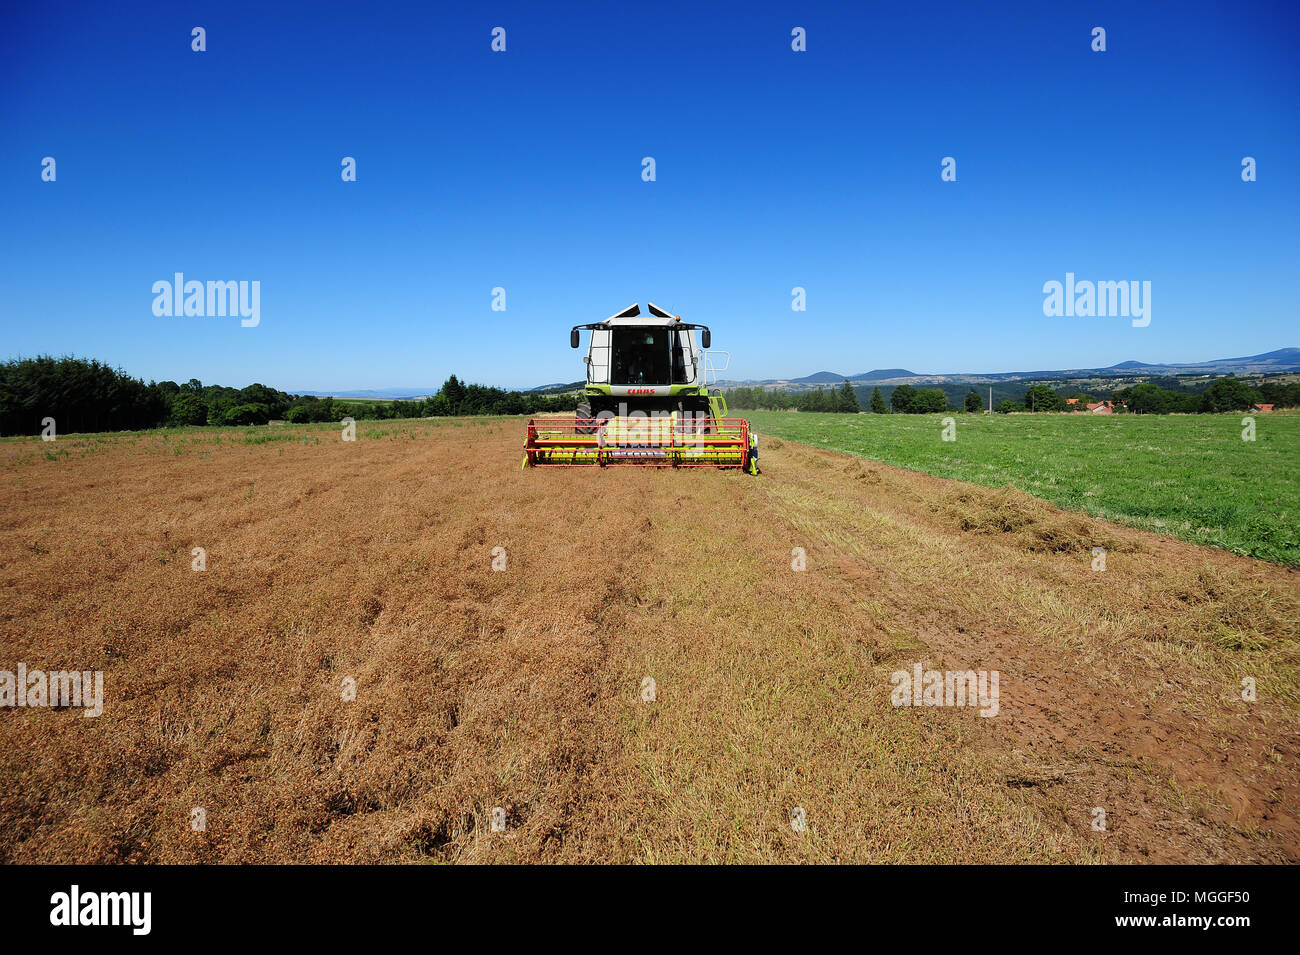 Un champ de lentilles du Puy, près du village de Vielprat dans la région française du Puy est en cours de récolte avec une moissonneuse-batteuse Banque D'Images